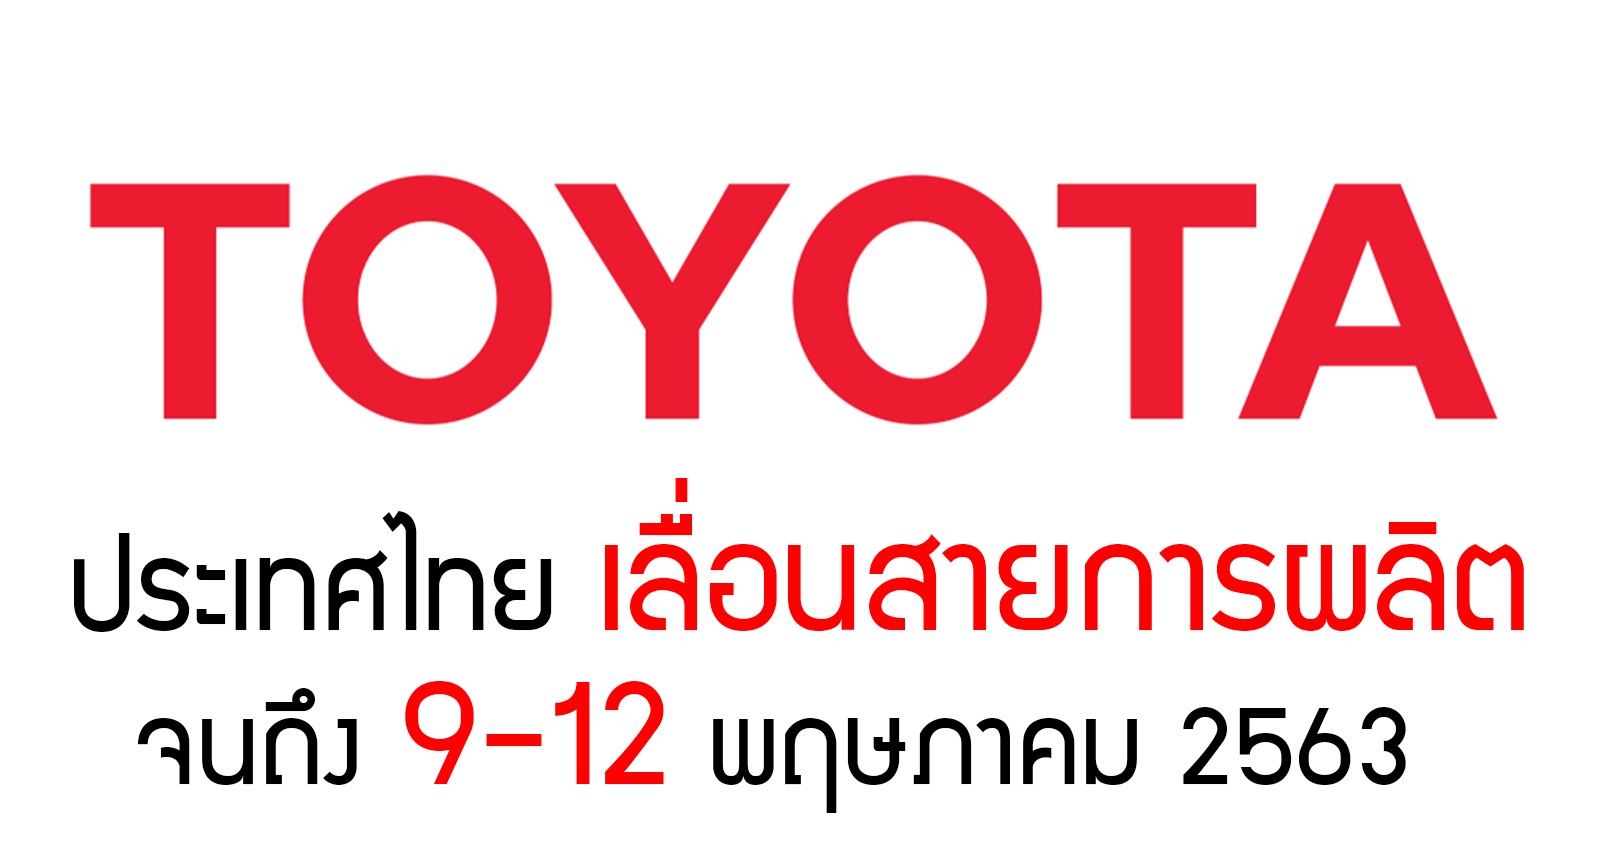 Toyota ประเทศไทย​ เลื่อนสายการผลิต 9 – 12 พฤษภาคม 2563